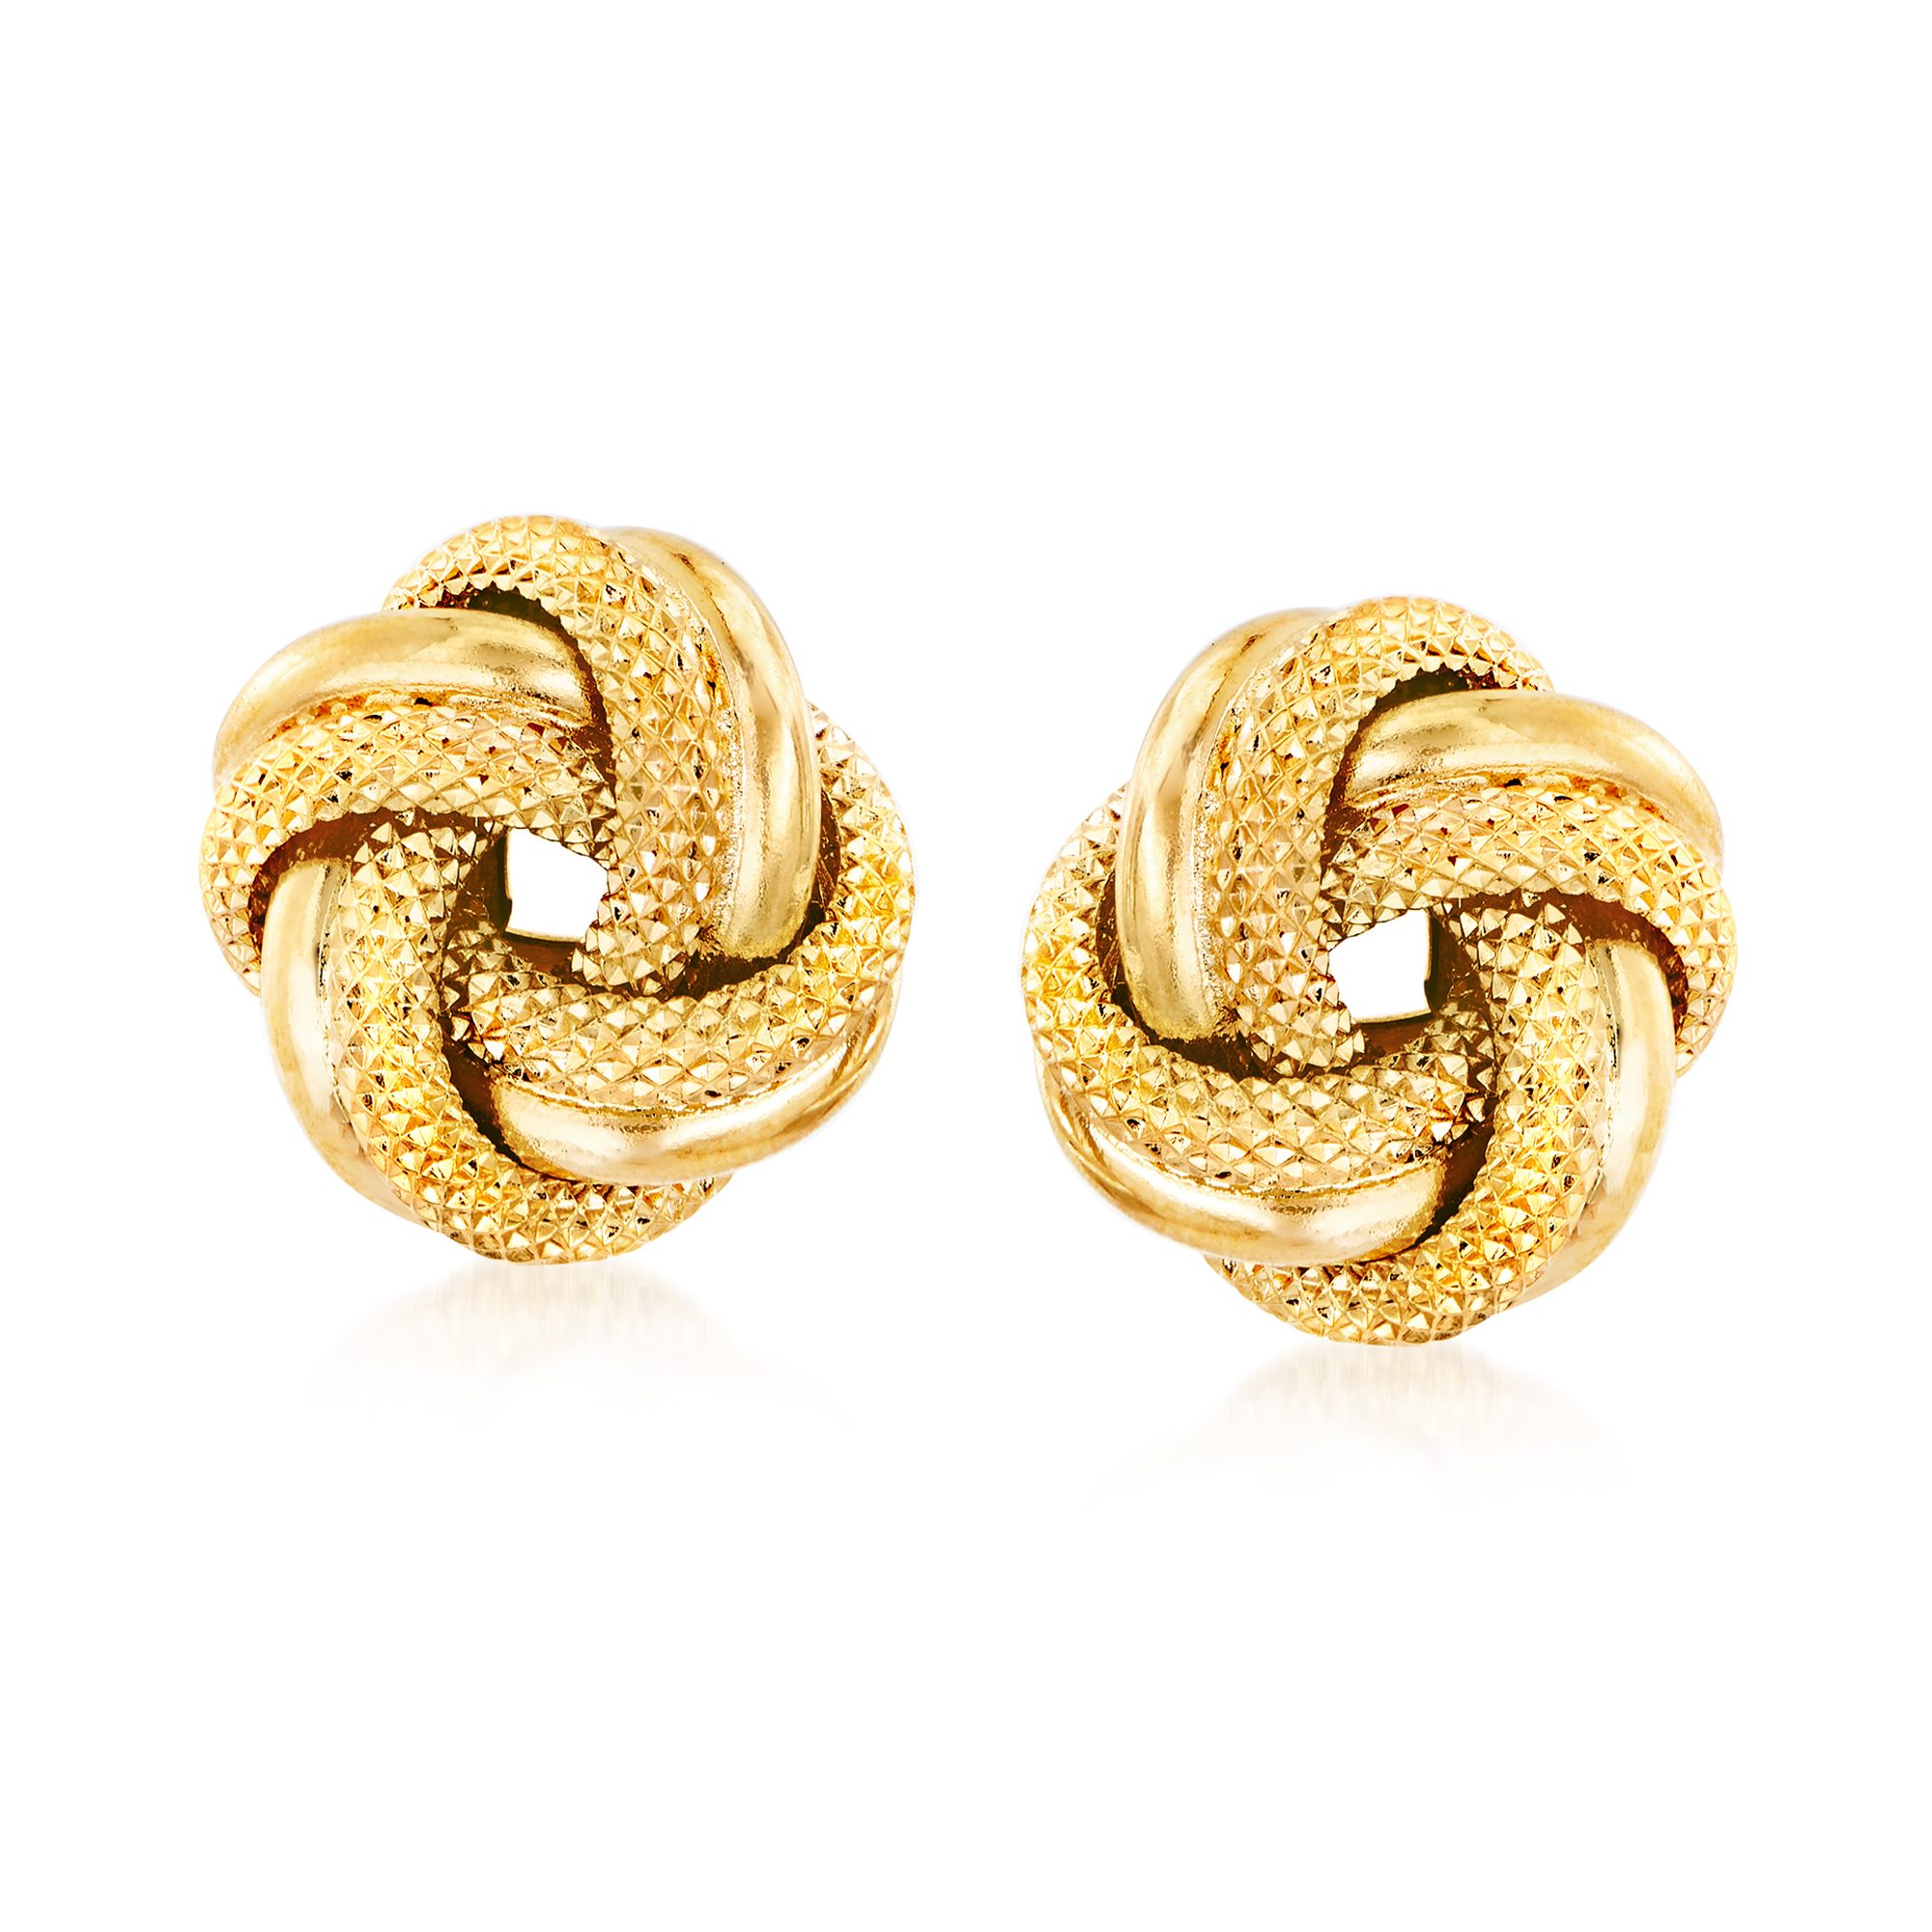 Italian 18kt Yellow Gold Love Knot Earrings | Ross-Simons